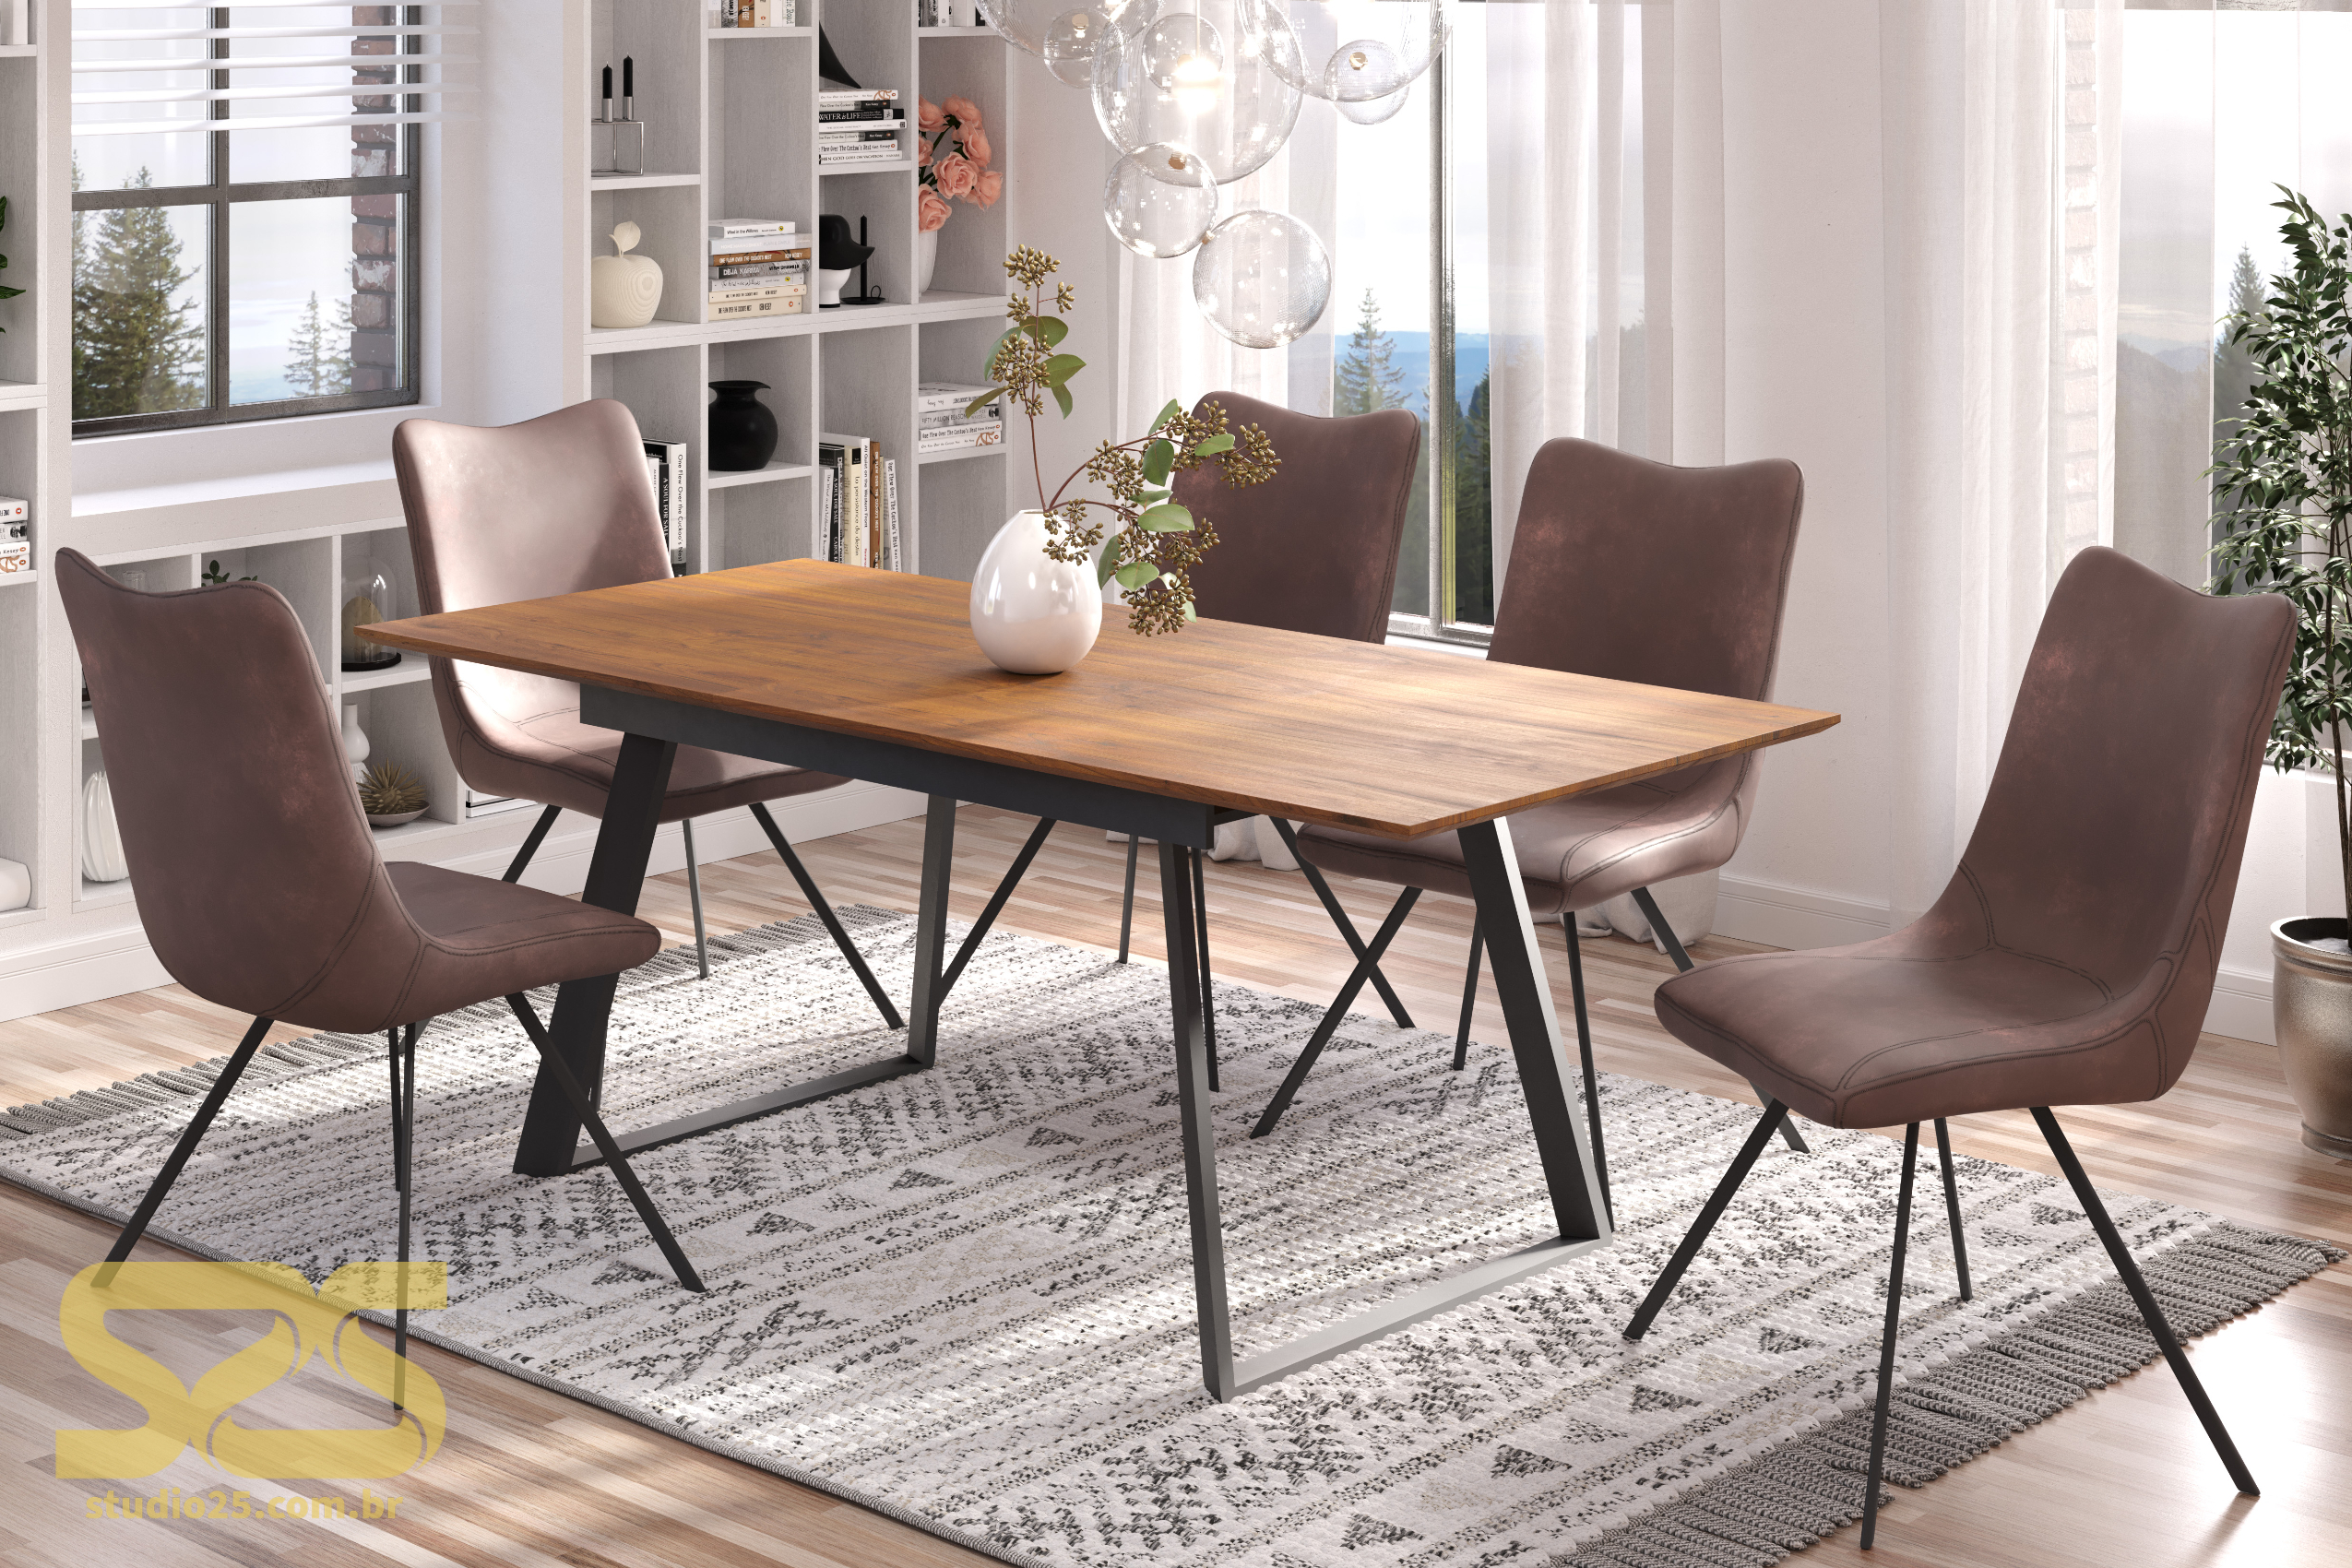 Imagem produzida em render pelo Studio 25 para o fabricante europeu das mesas e cadeiras